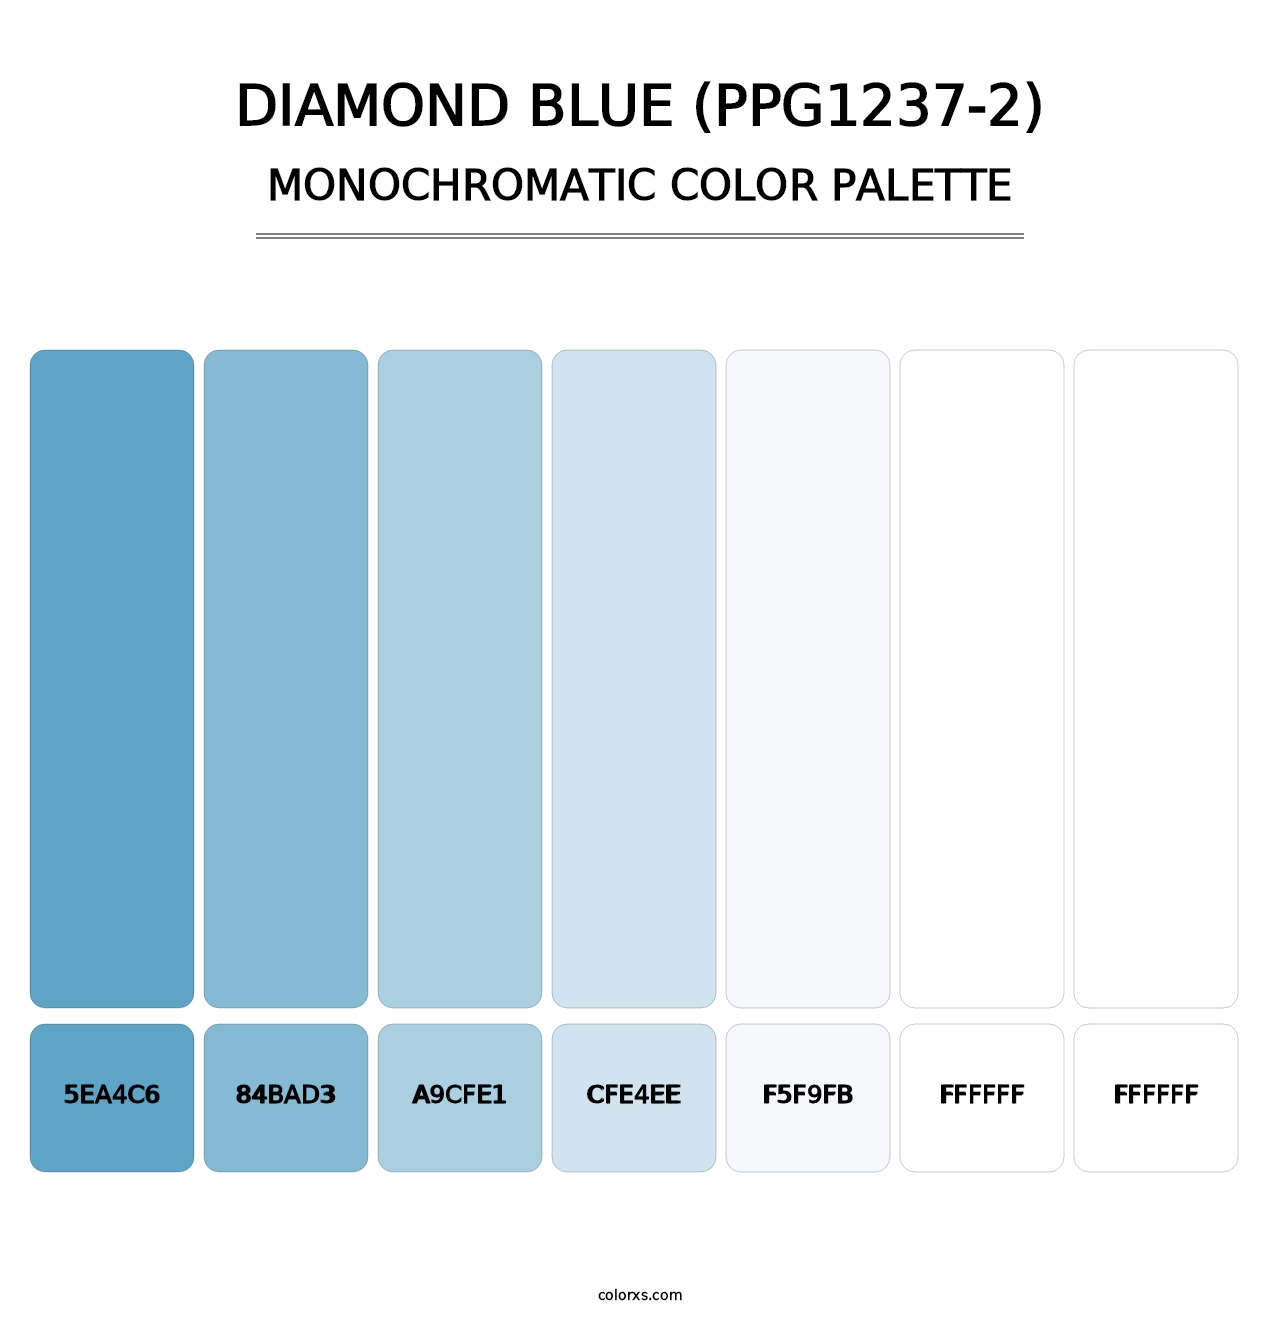 Diamond Blue (PPG1237-2) - Monochromatic Color Palette